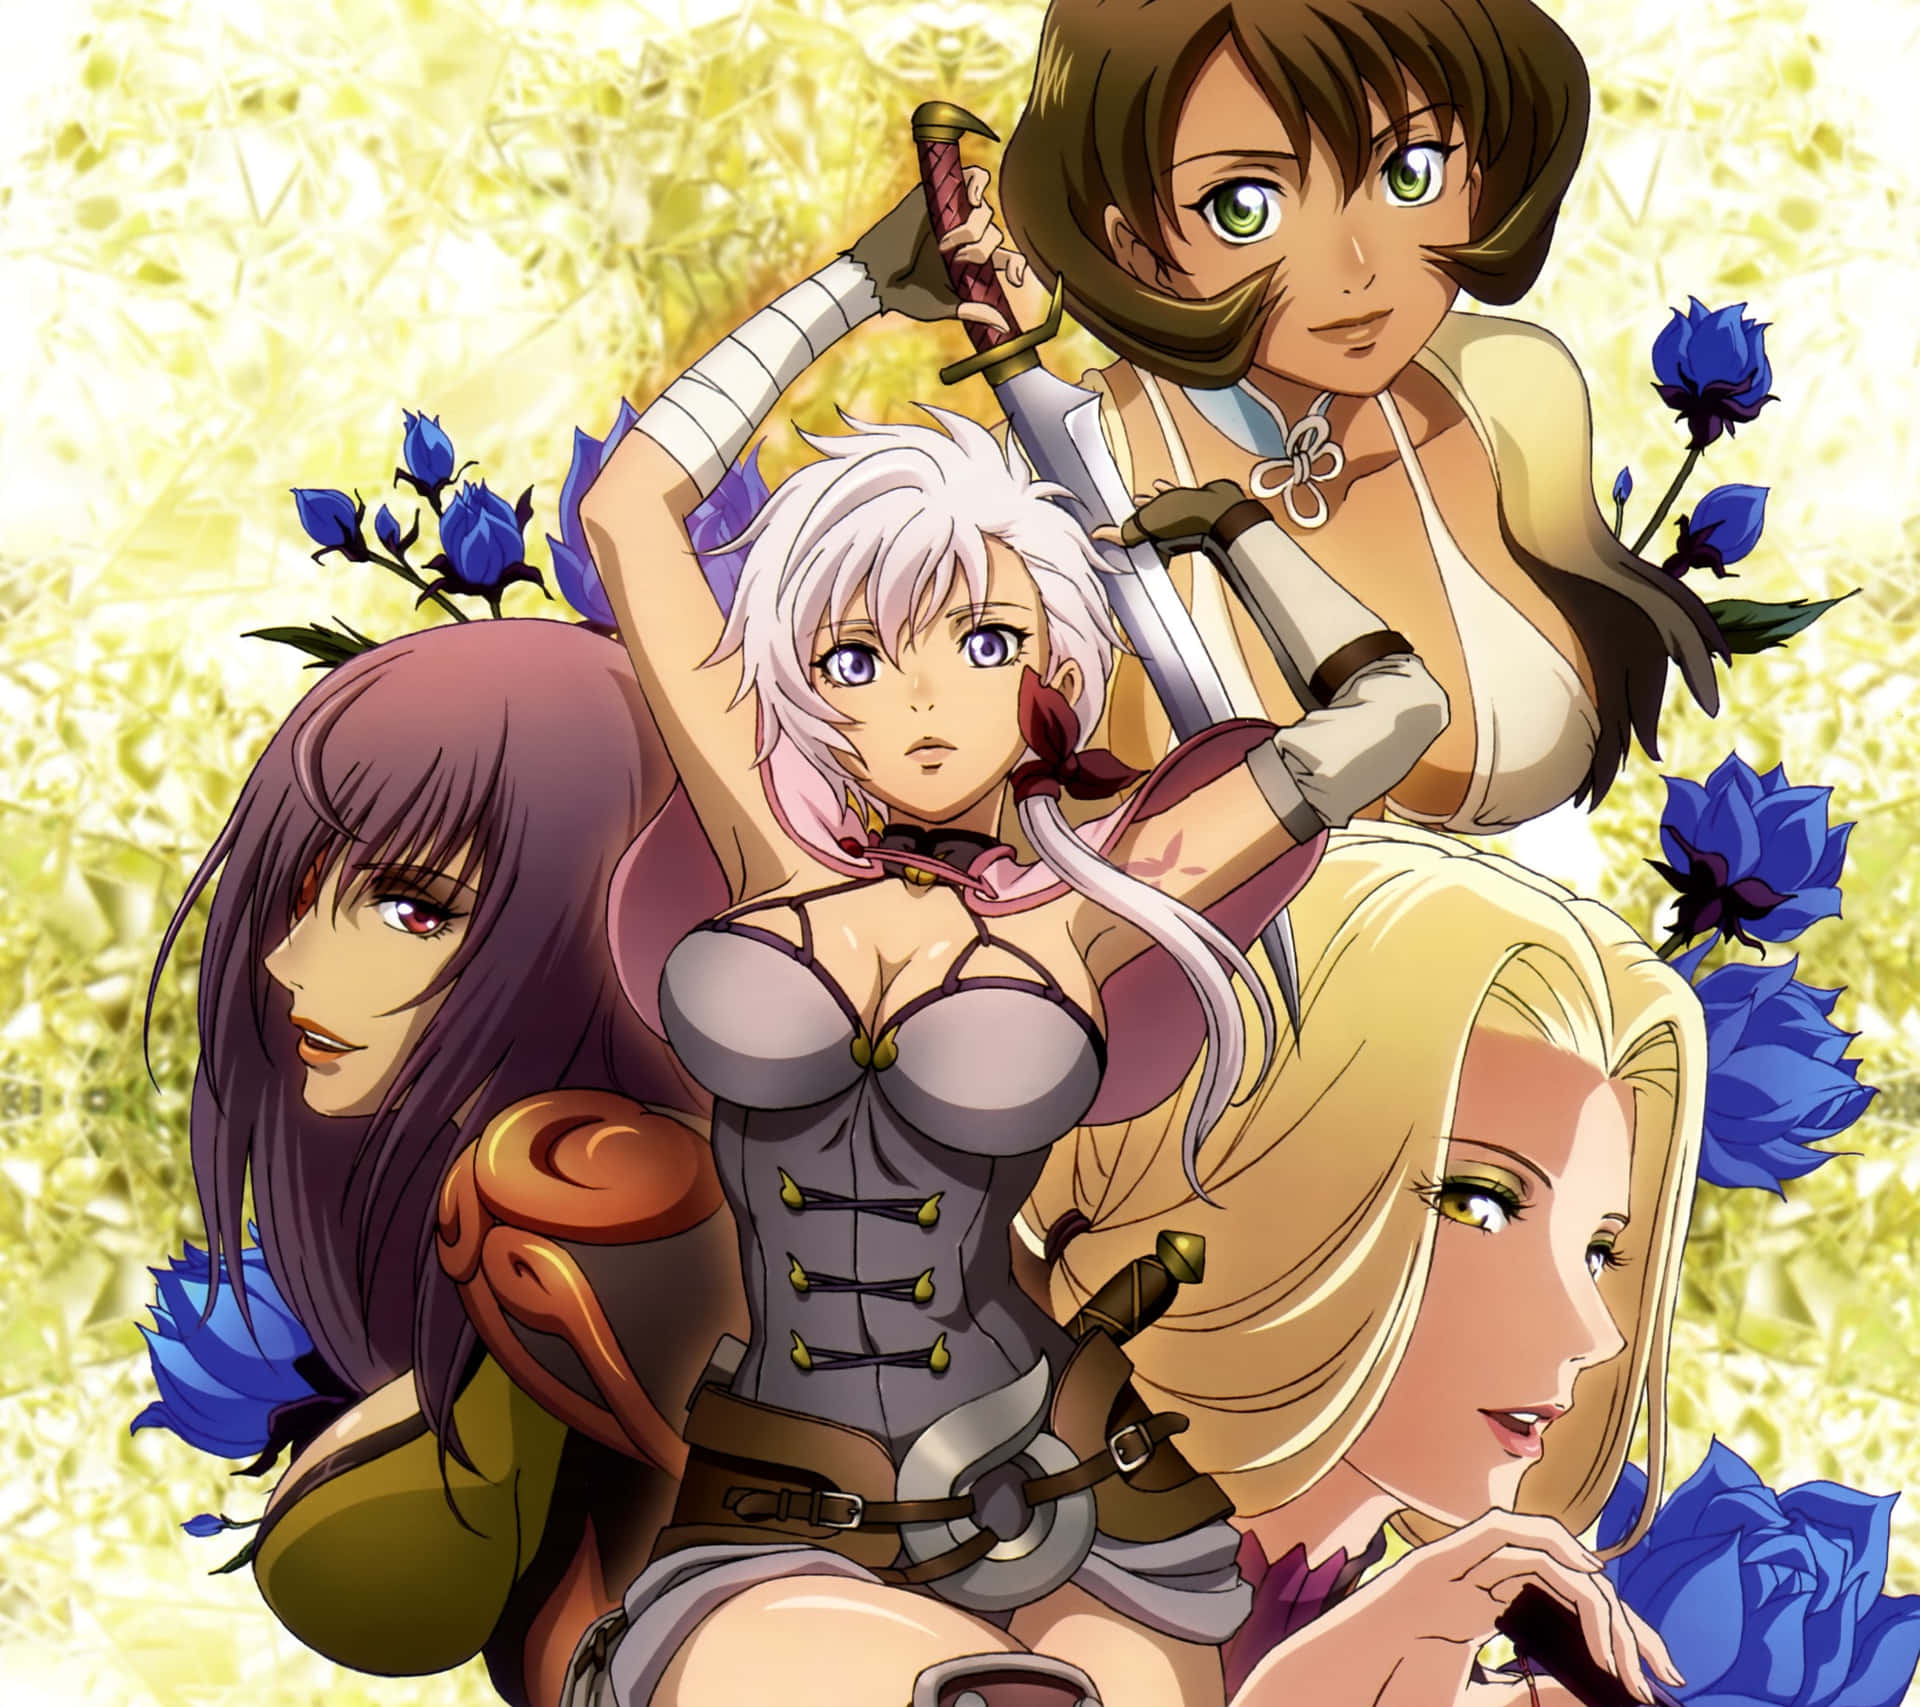 Engruppe Anime-piger Med Sværd Og Blomster. Wallpaper